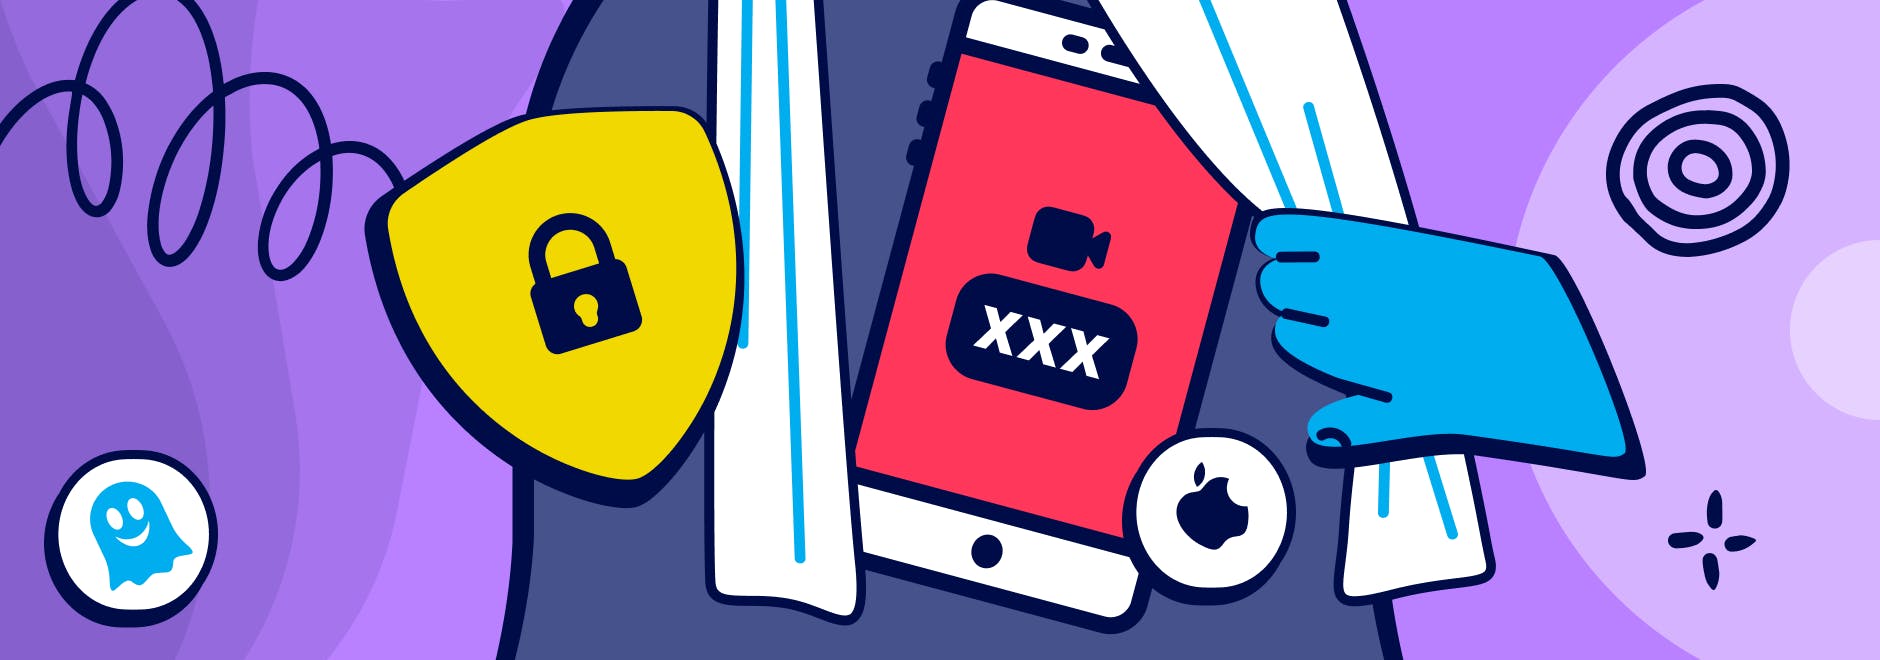 Секс Игры iOS - Порно Игры Онлайн Бесплатно Для Мобильных устройств